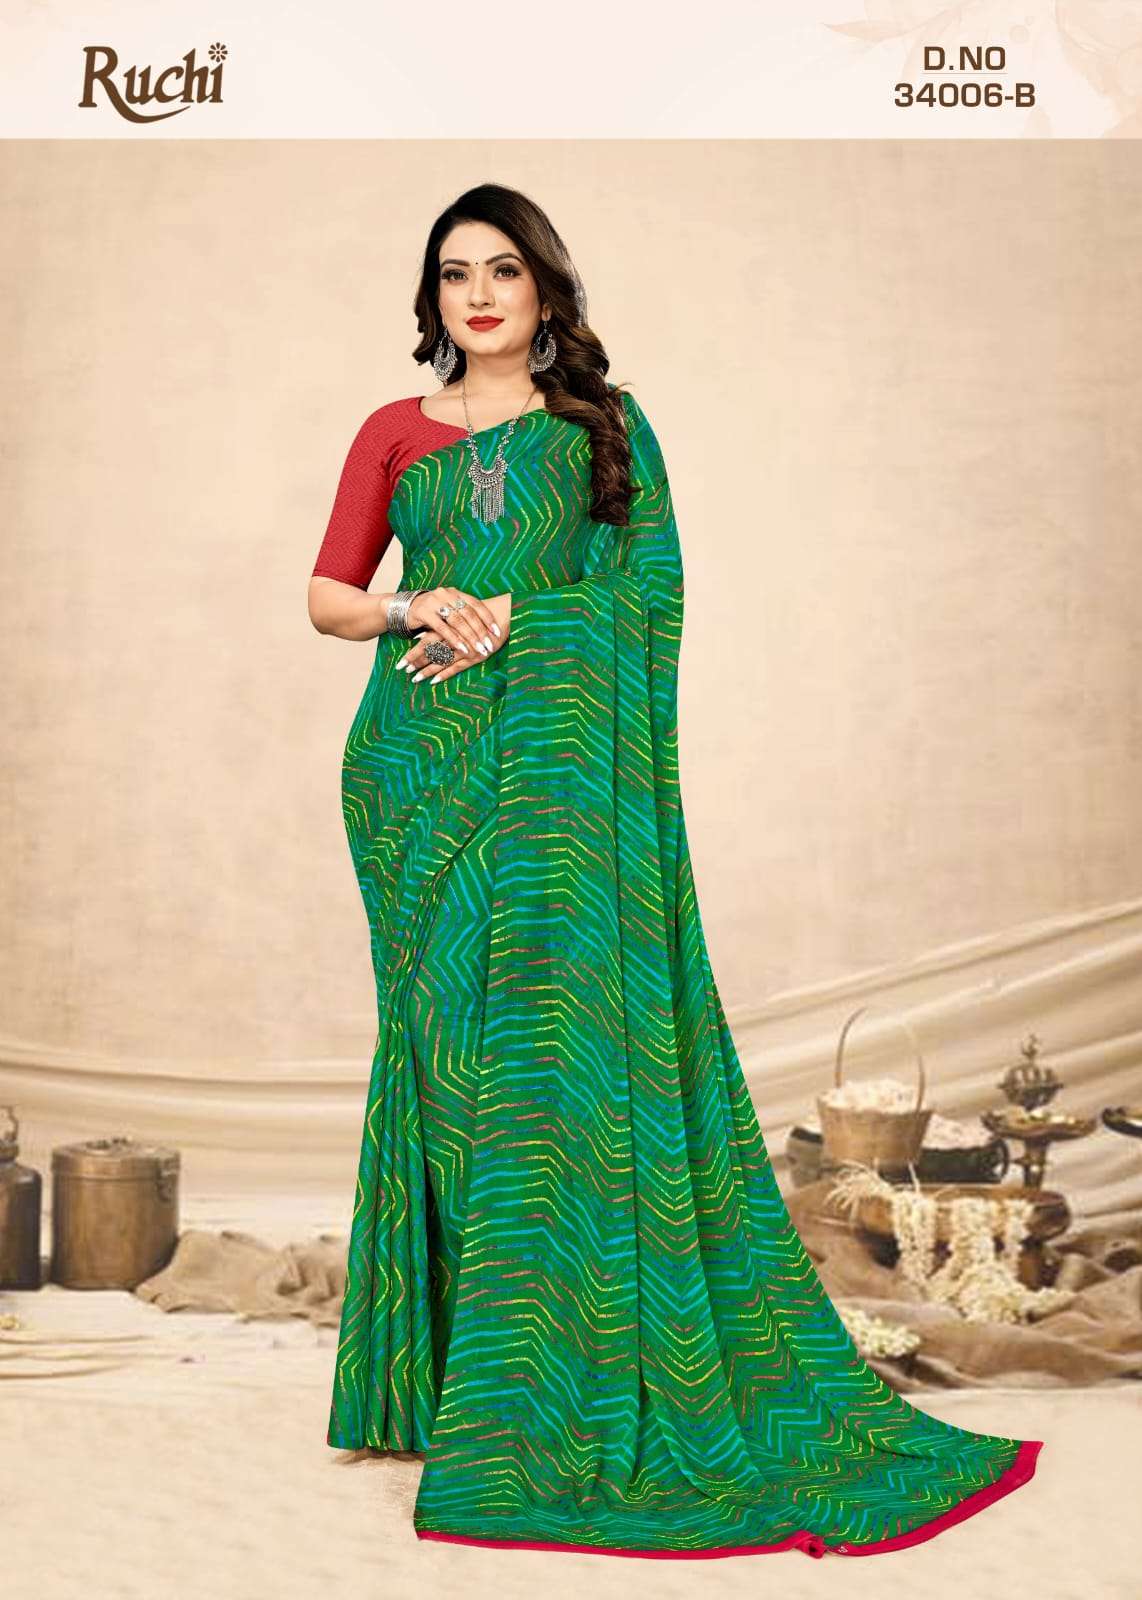 ruchi star chiffon lehriya 34006 fancy wear chiffon saree collection 